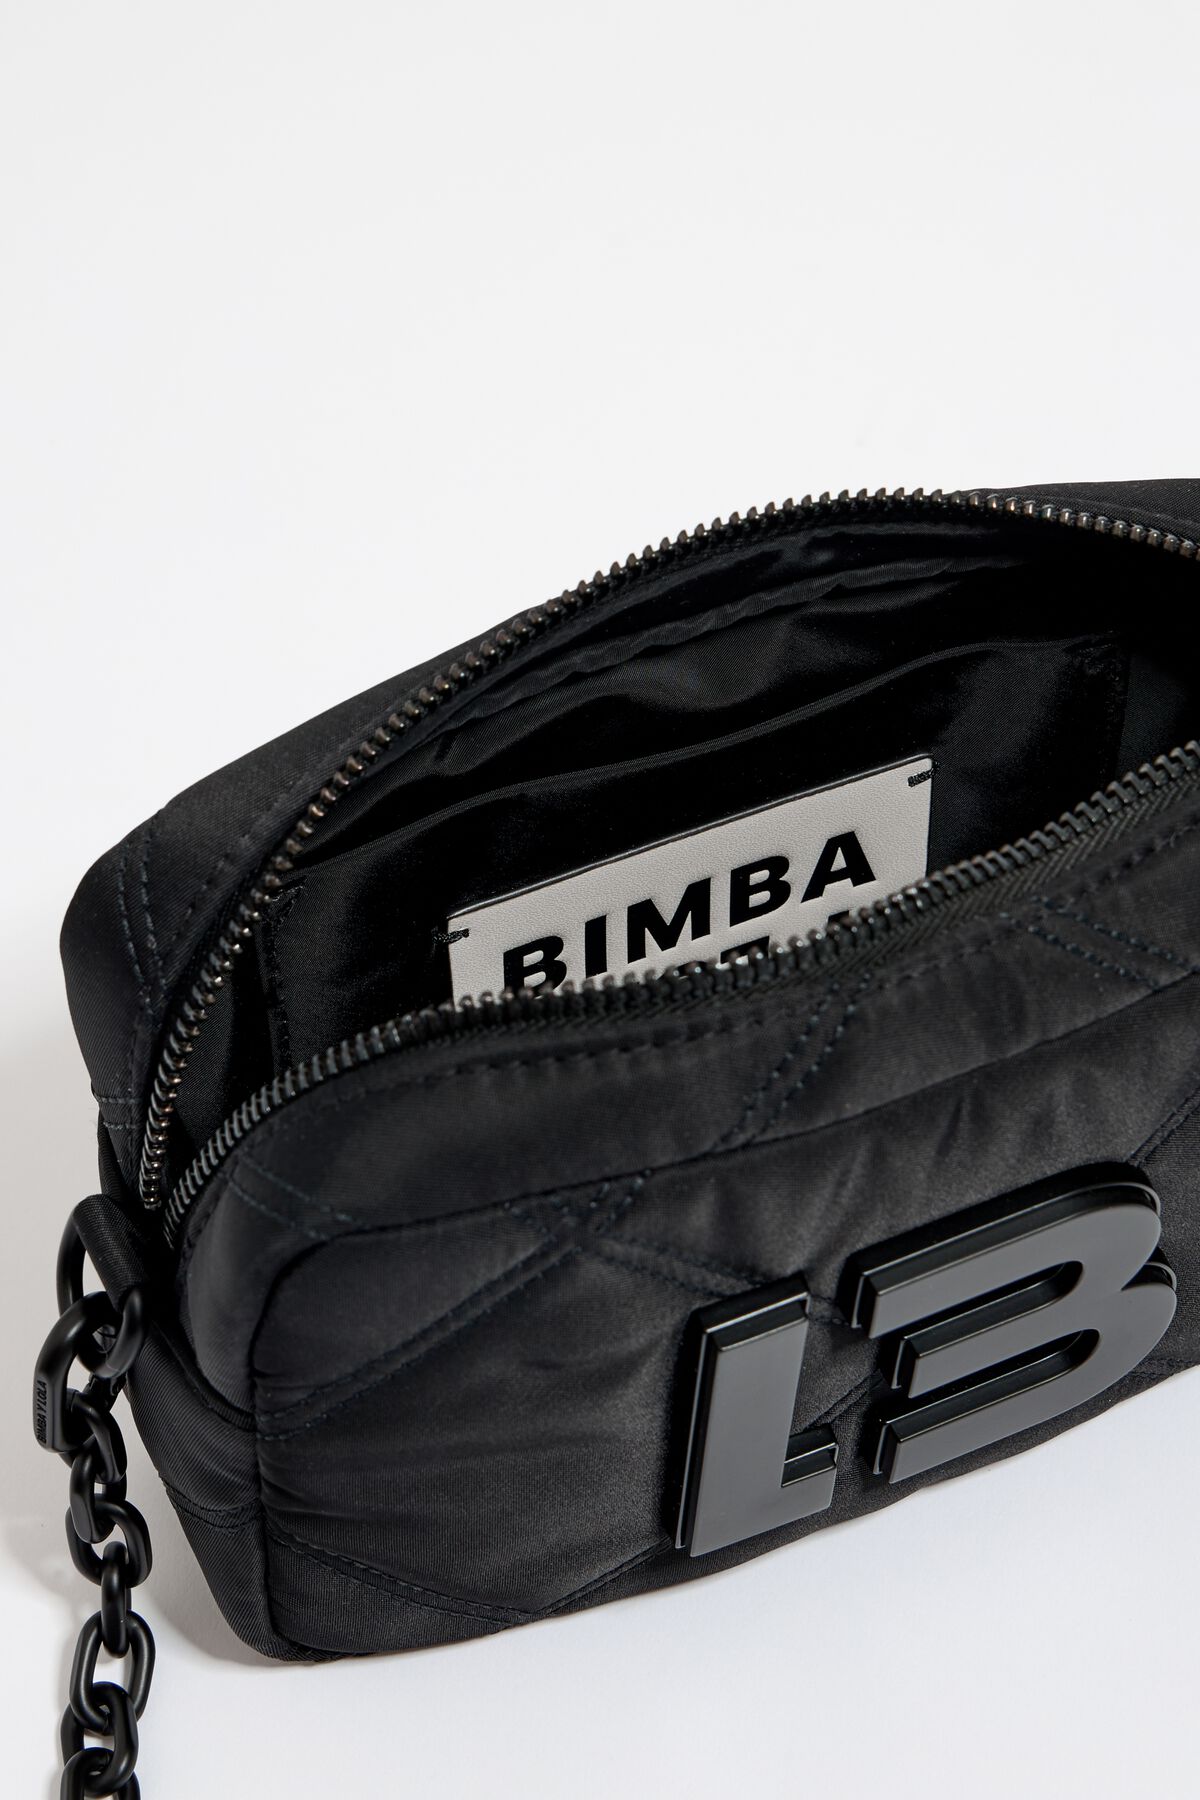 Bimba Y Lola Small Padded Black Nylon Barrel Bag